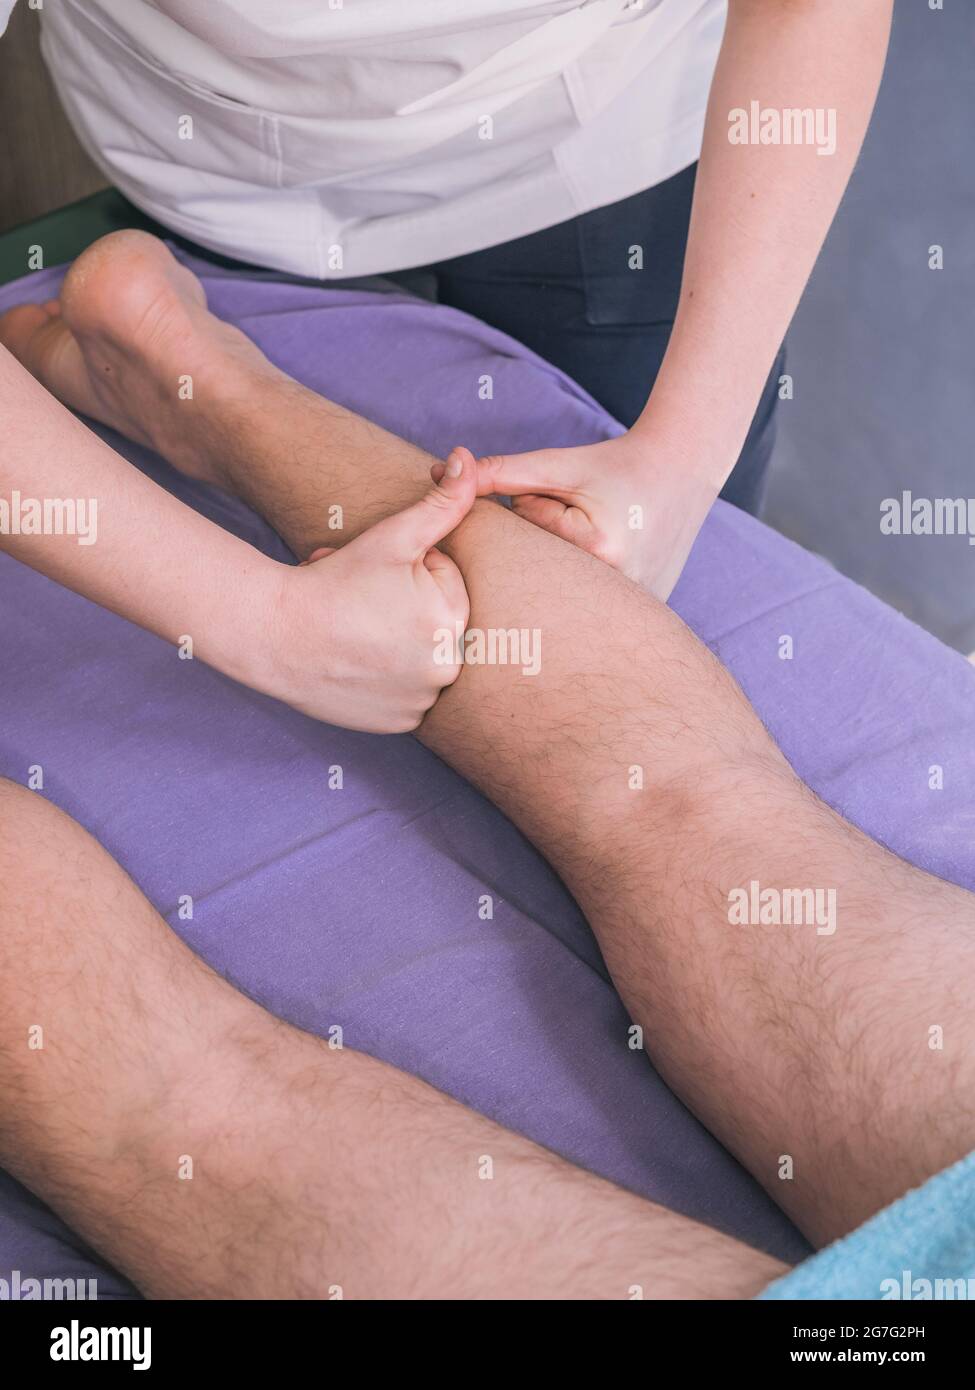 deux personnes, physiothérapeute massant les muscles des jambes de l'homme - veaux. Banque D'Images